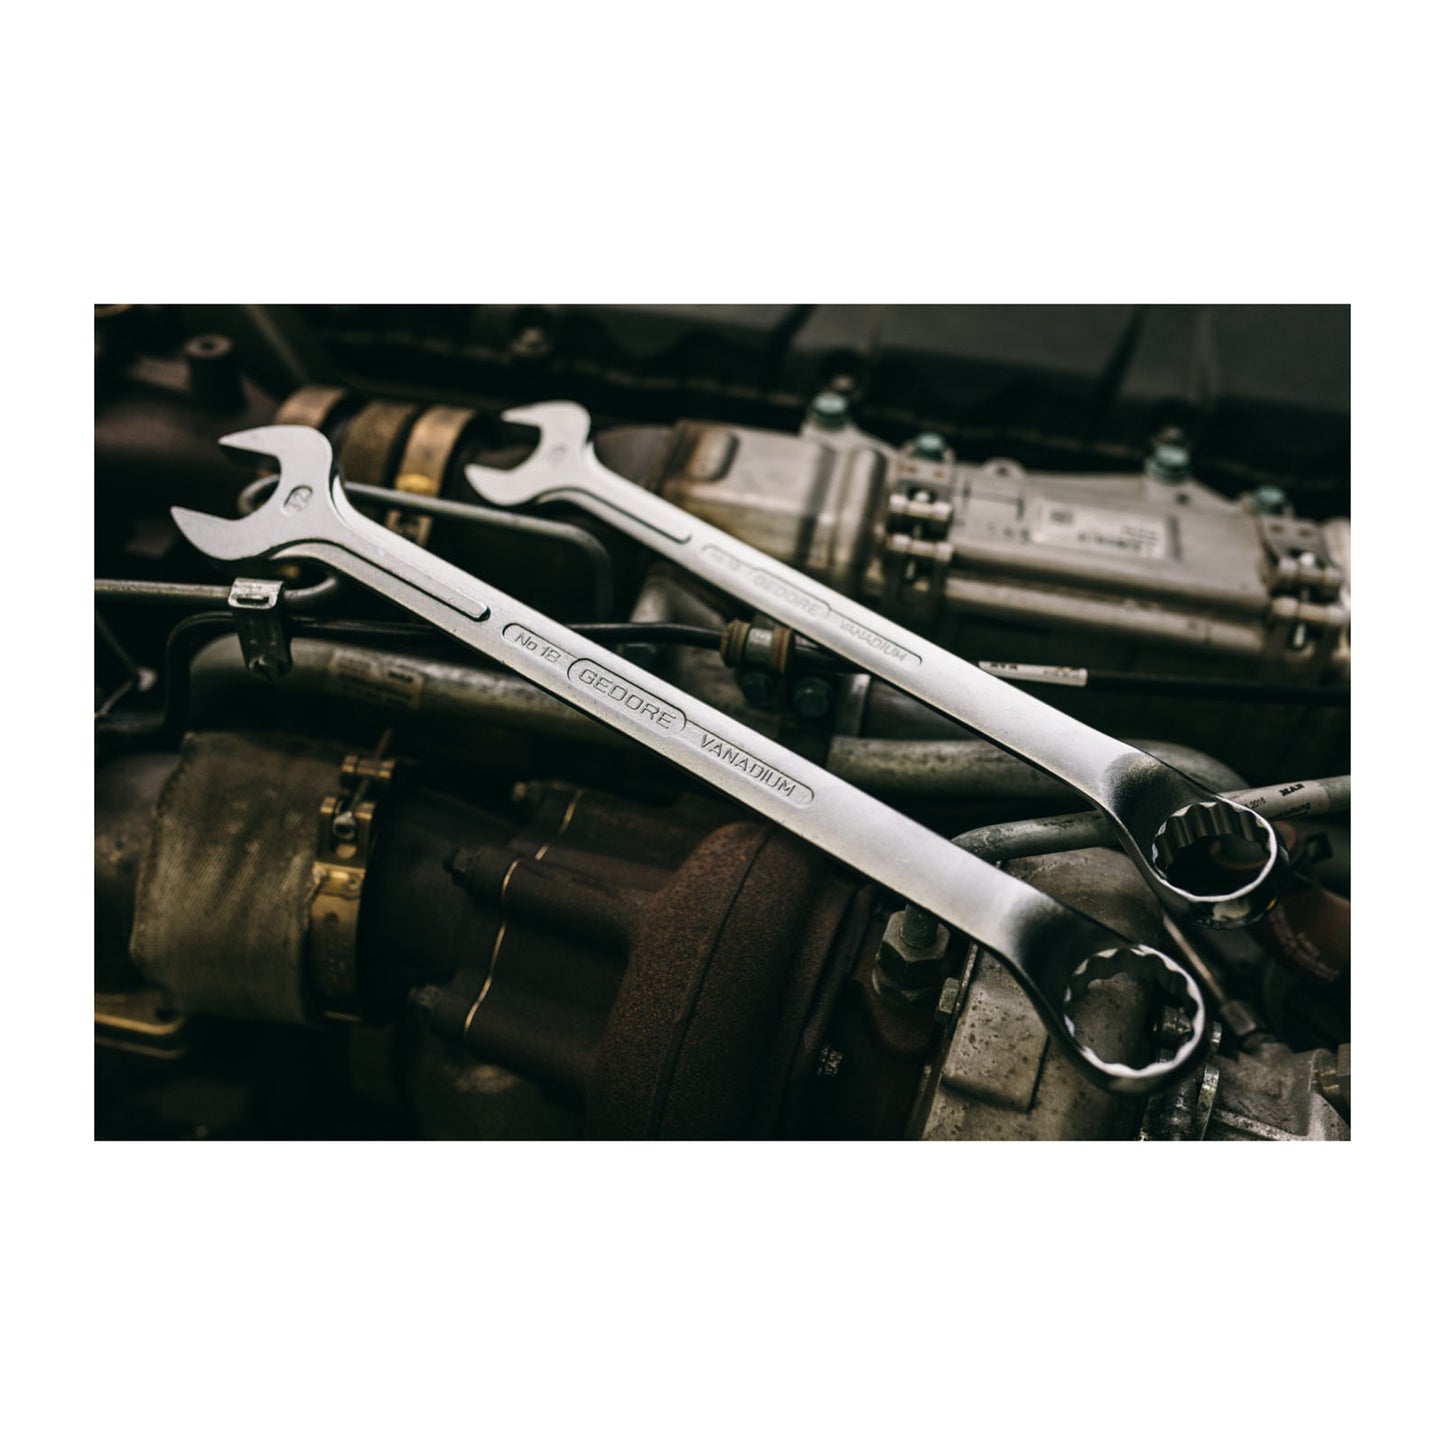 GEDORE 1 B 1.7/16AF - Combination Wrench, 1.7/16AF (6007170)